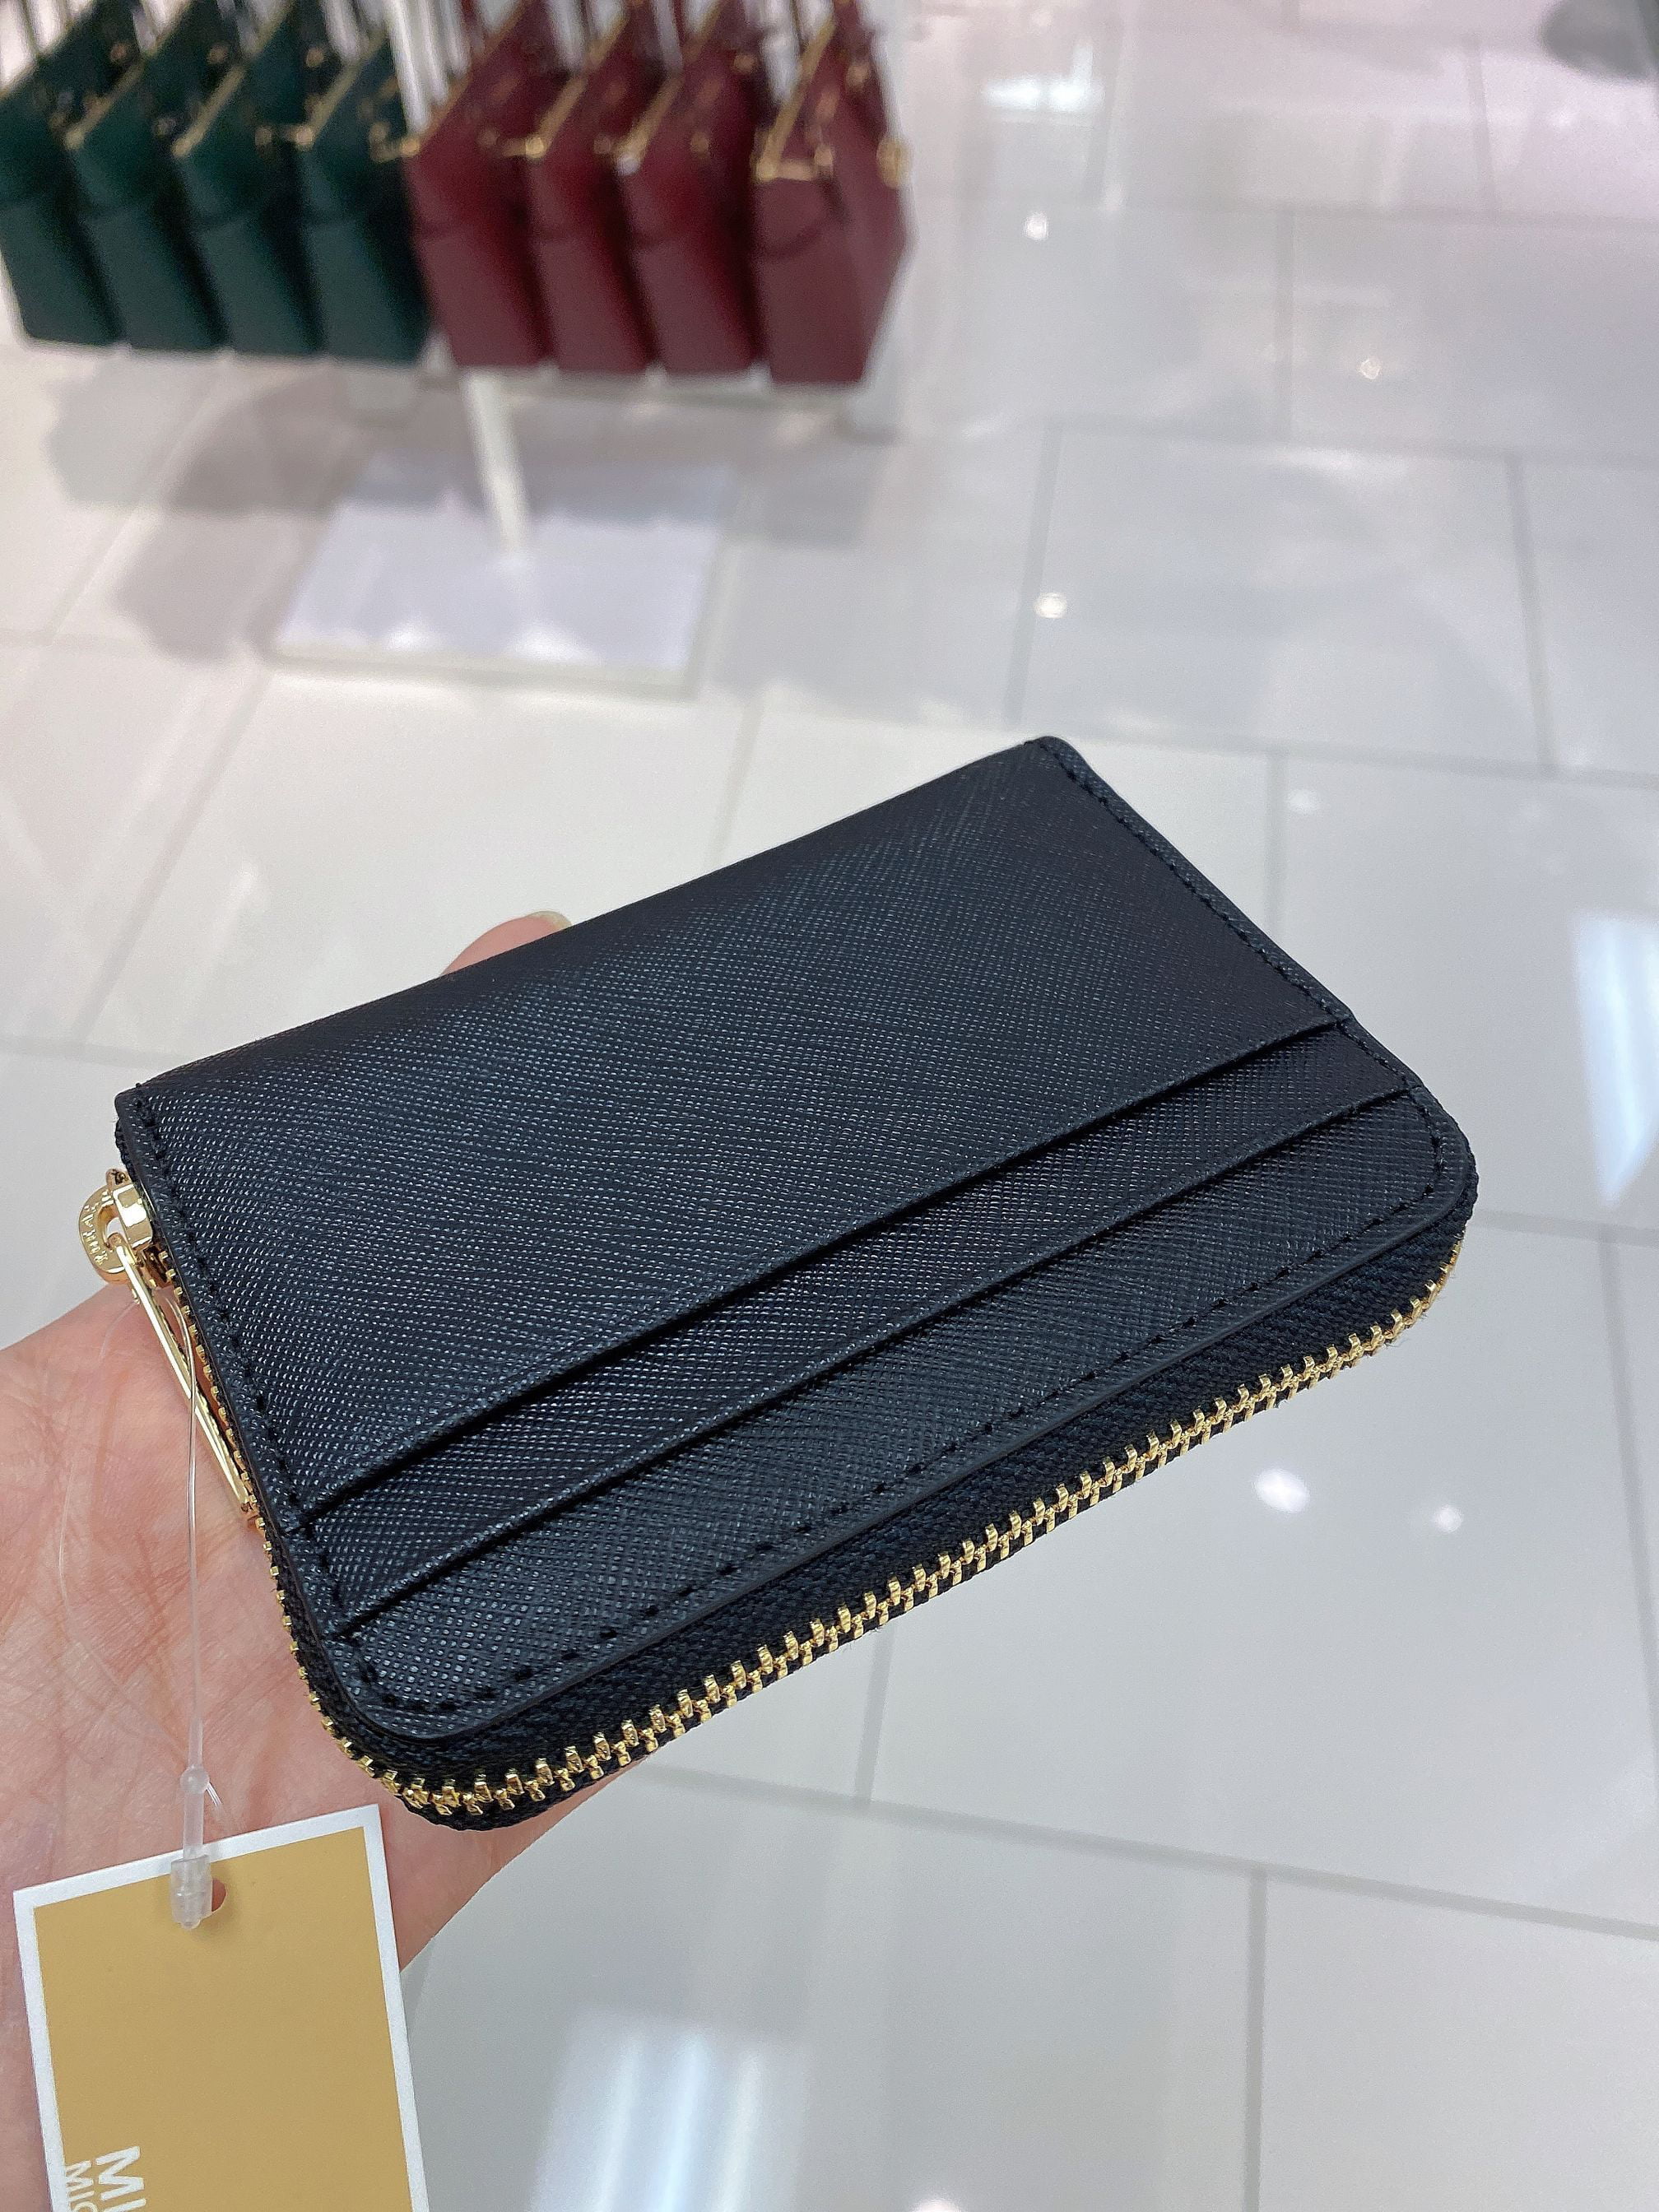 Michael Kors Black Leather Zip-around Clutch Wallet 39S0LGFU5L-001  193599474137 - Handbags - Jomashop